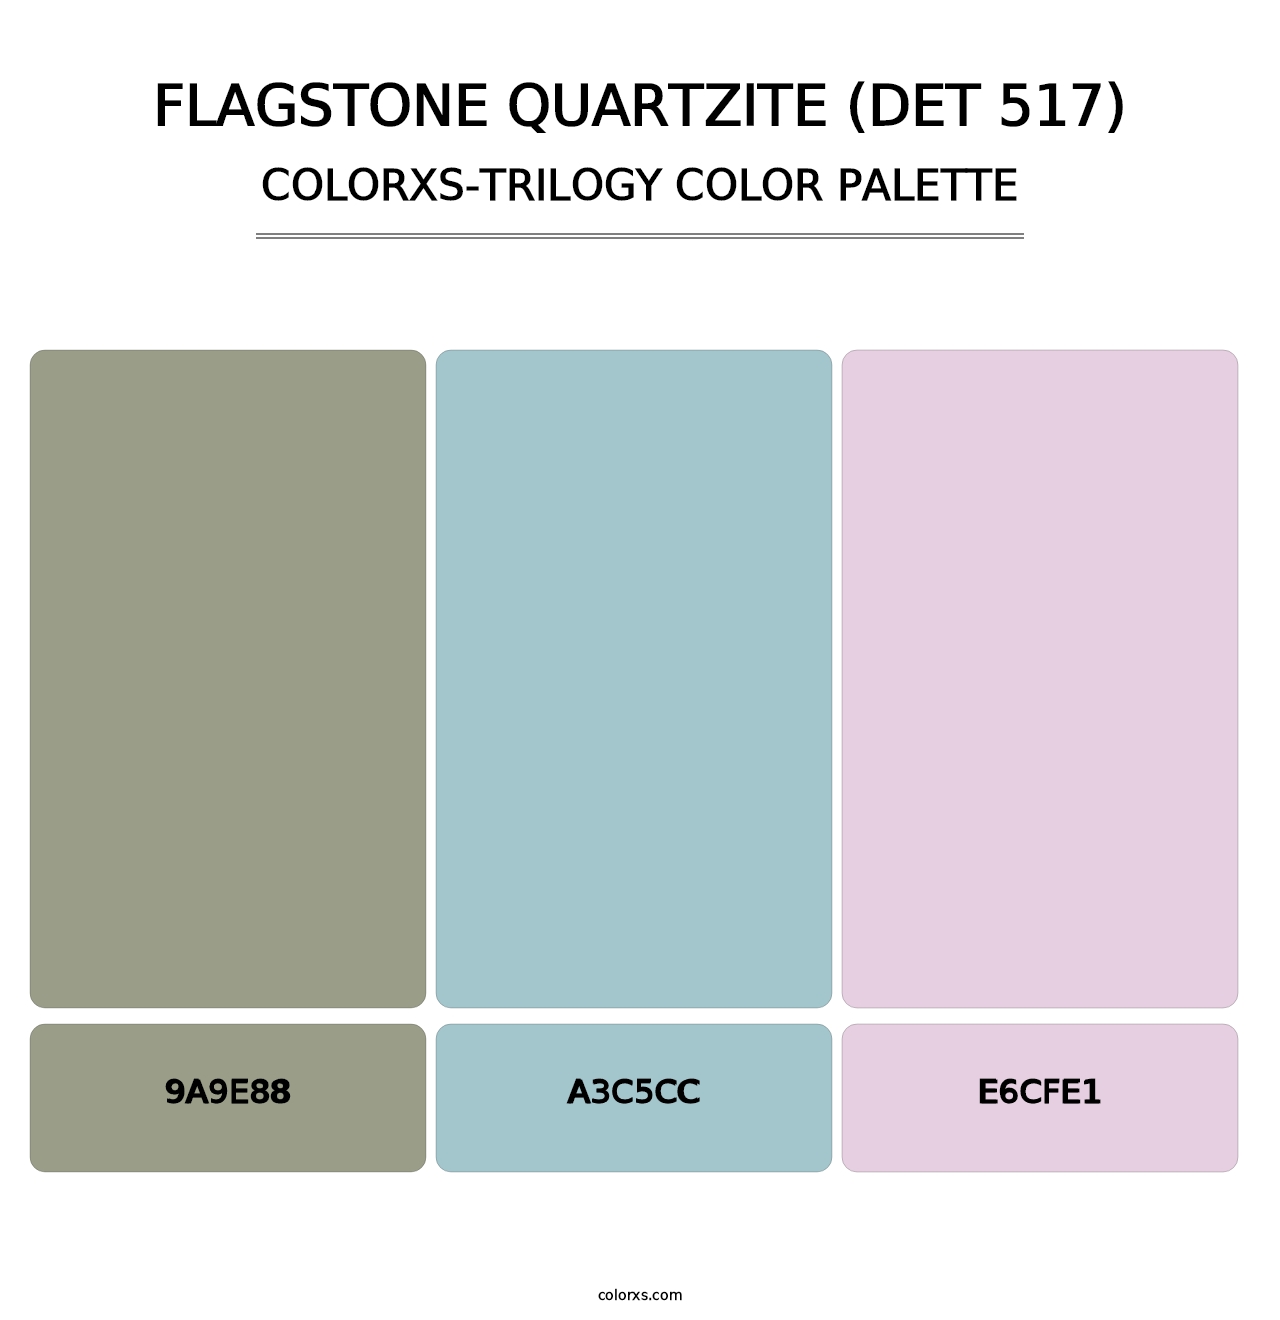 Flagstone Quartzite (DET 517) - Colorxs Trilogy Palette